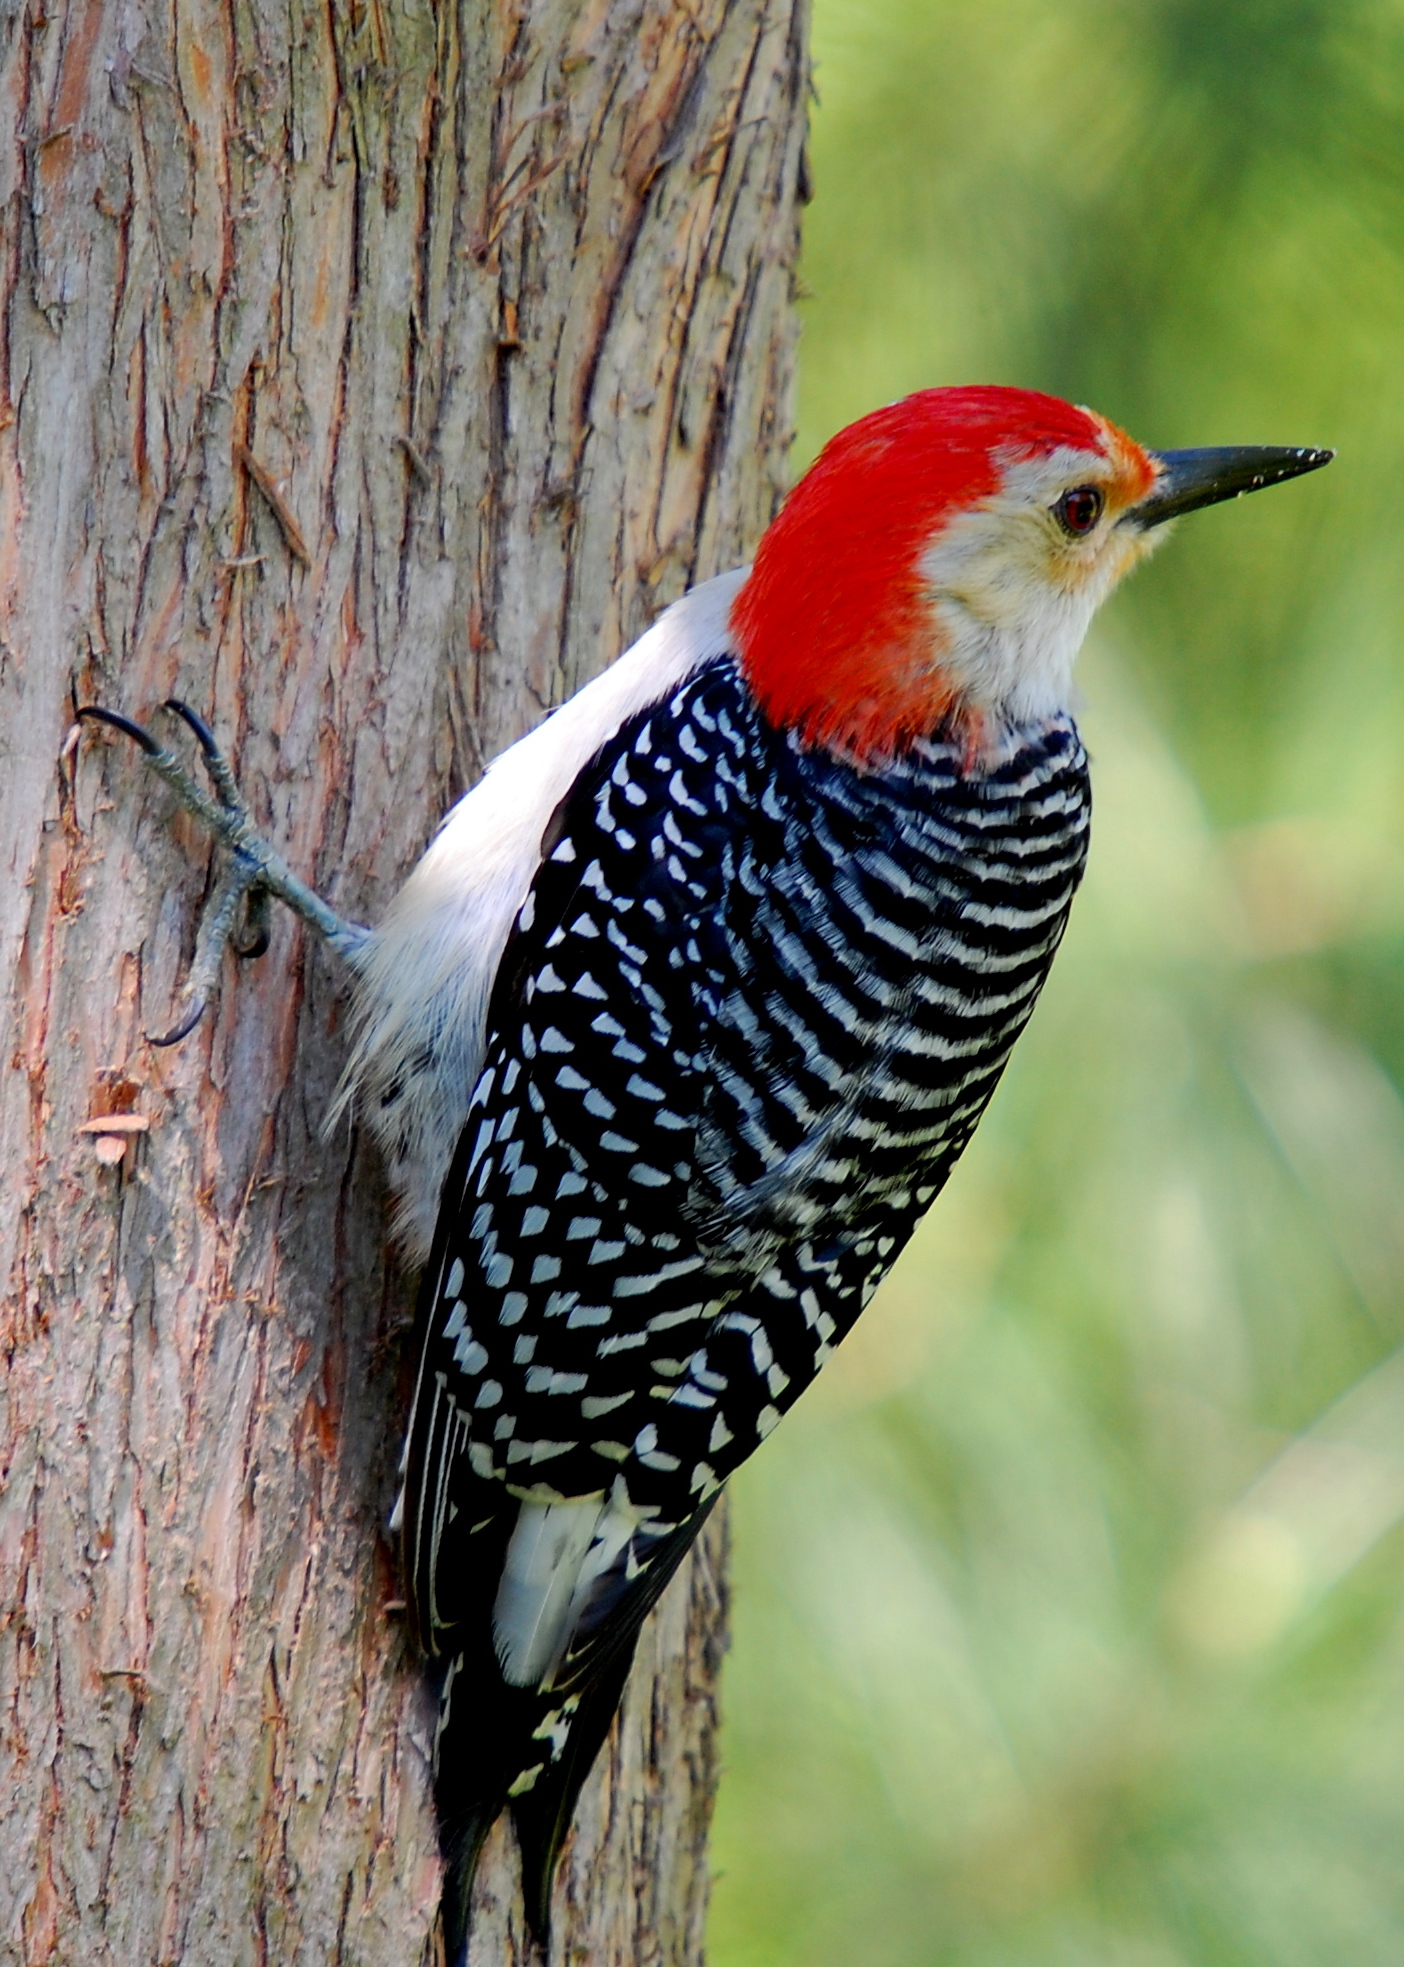 File:Red-bellied Woodpecker on tree.JPG - Wikimedia Commons